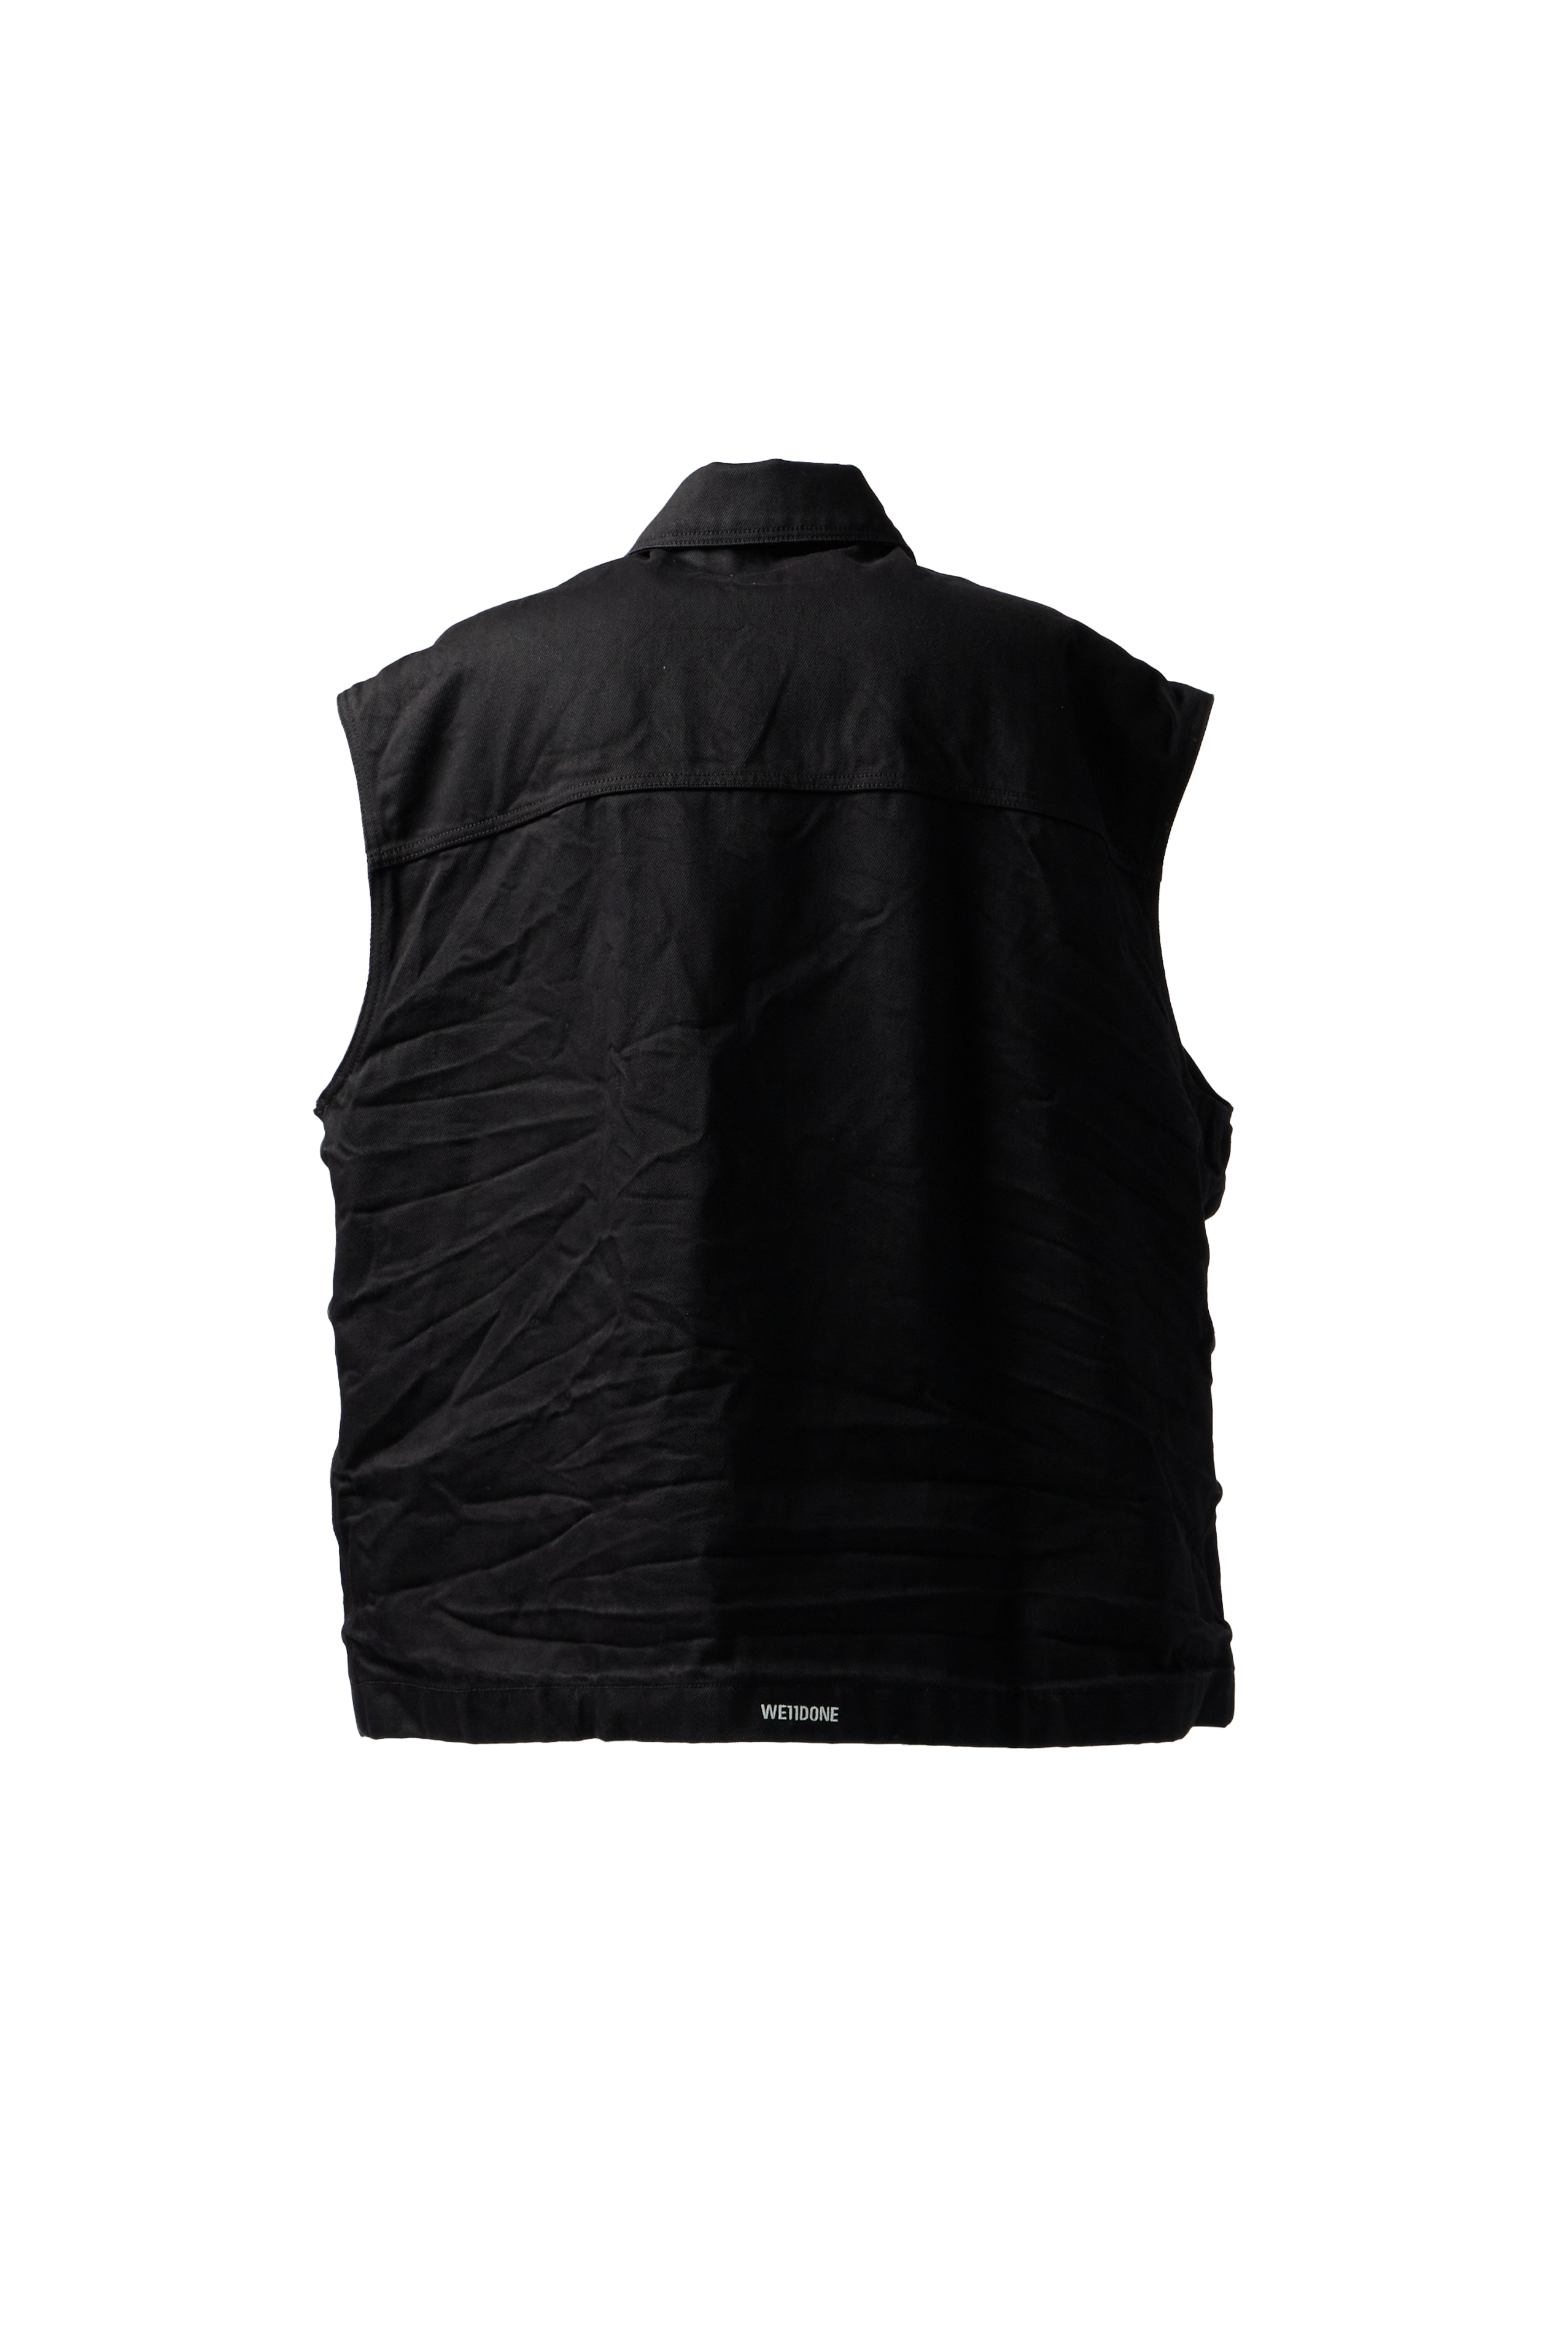 WE11DONE - Wrinkled 3 Pocket Denim Vest product image